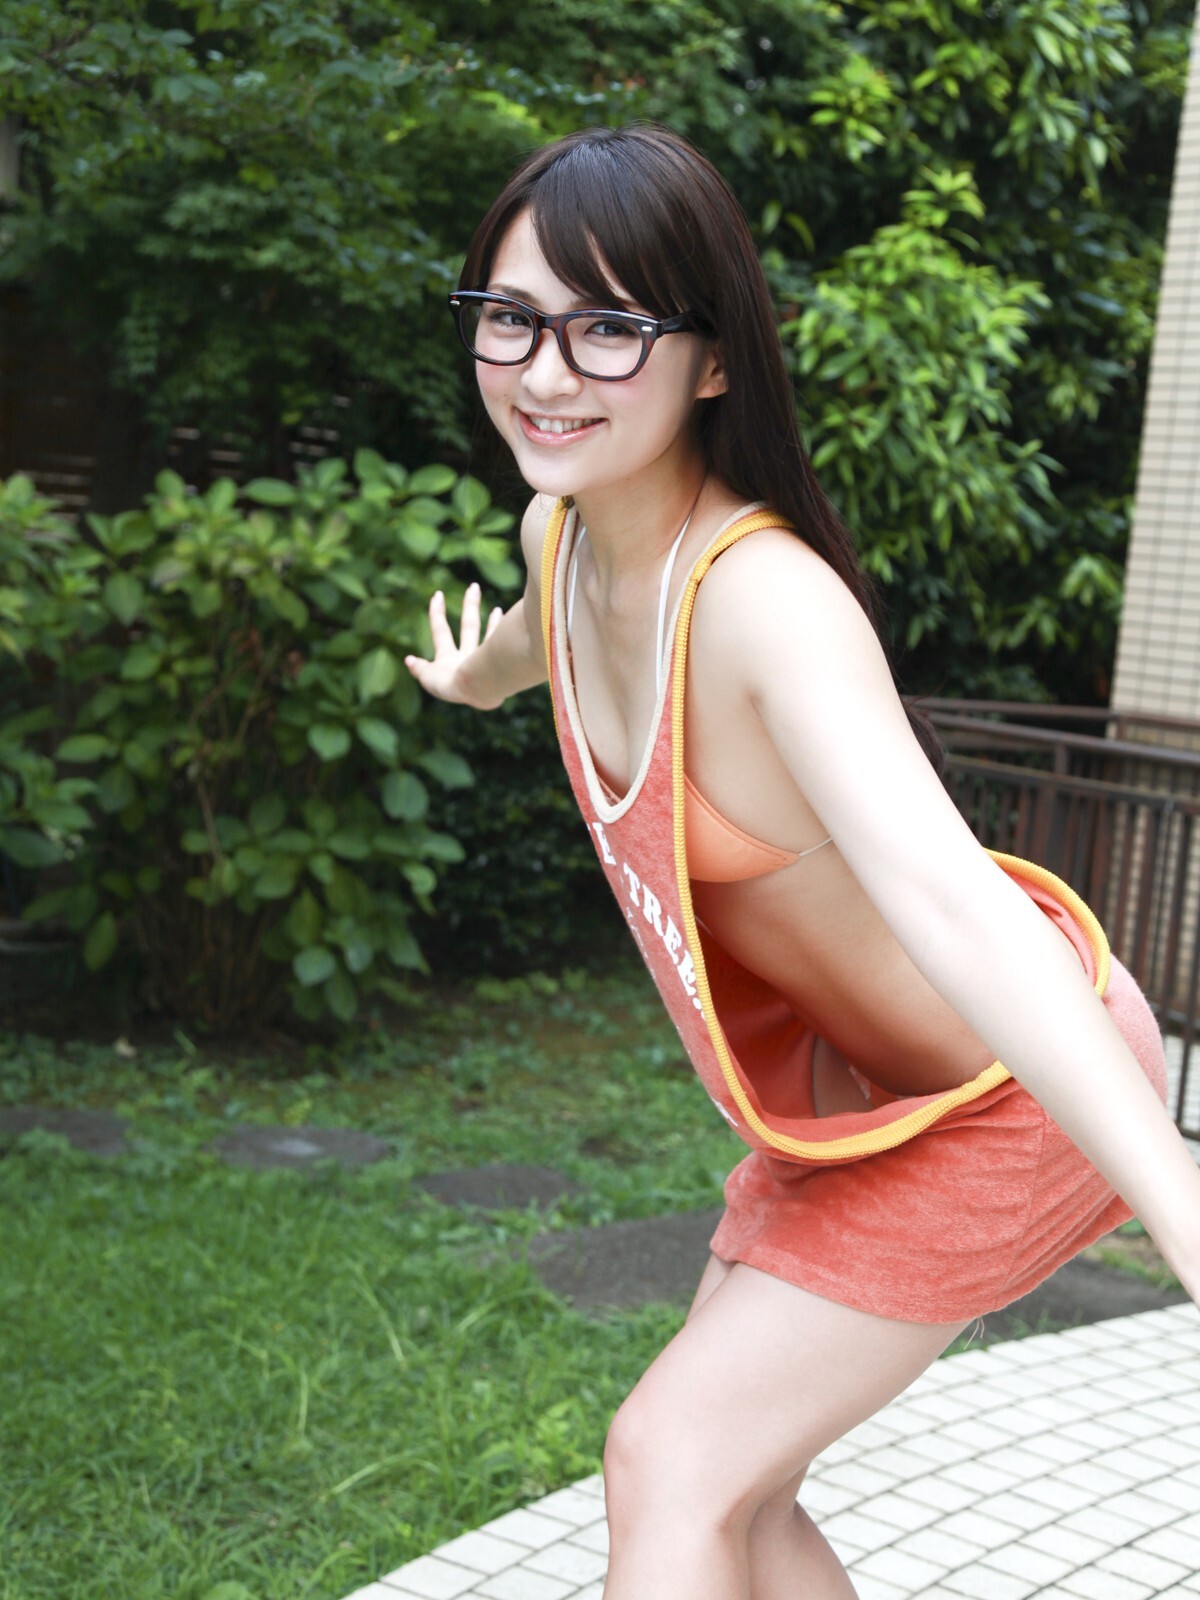 鈴木咲 [Sabra][11-24] strictly GIRLS 日本美女写真图片